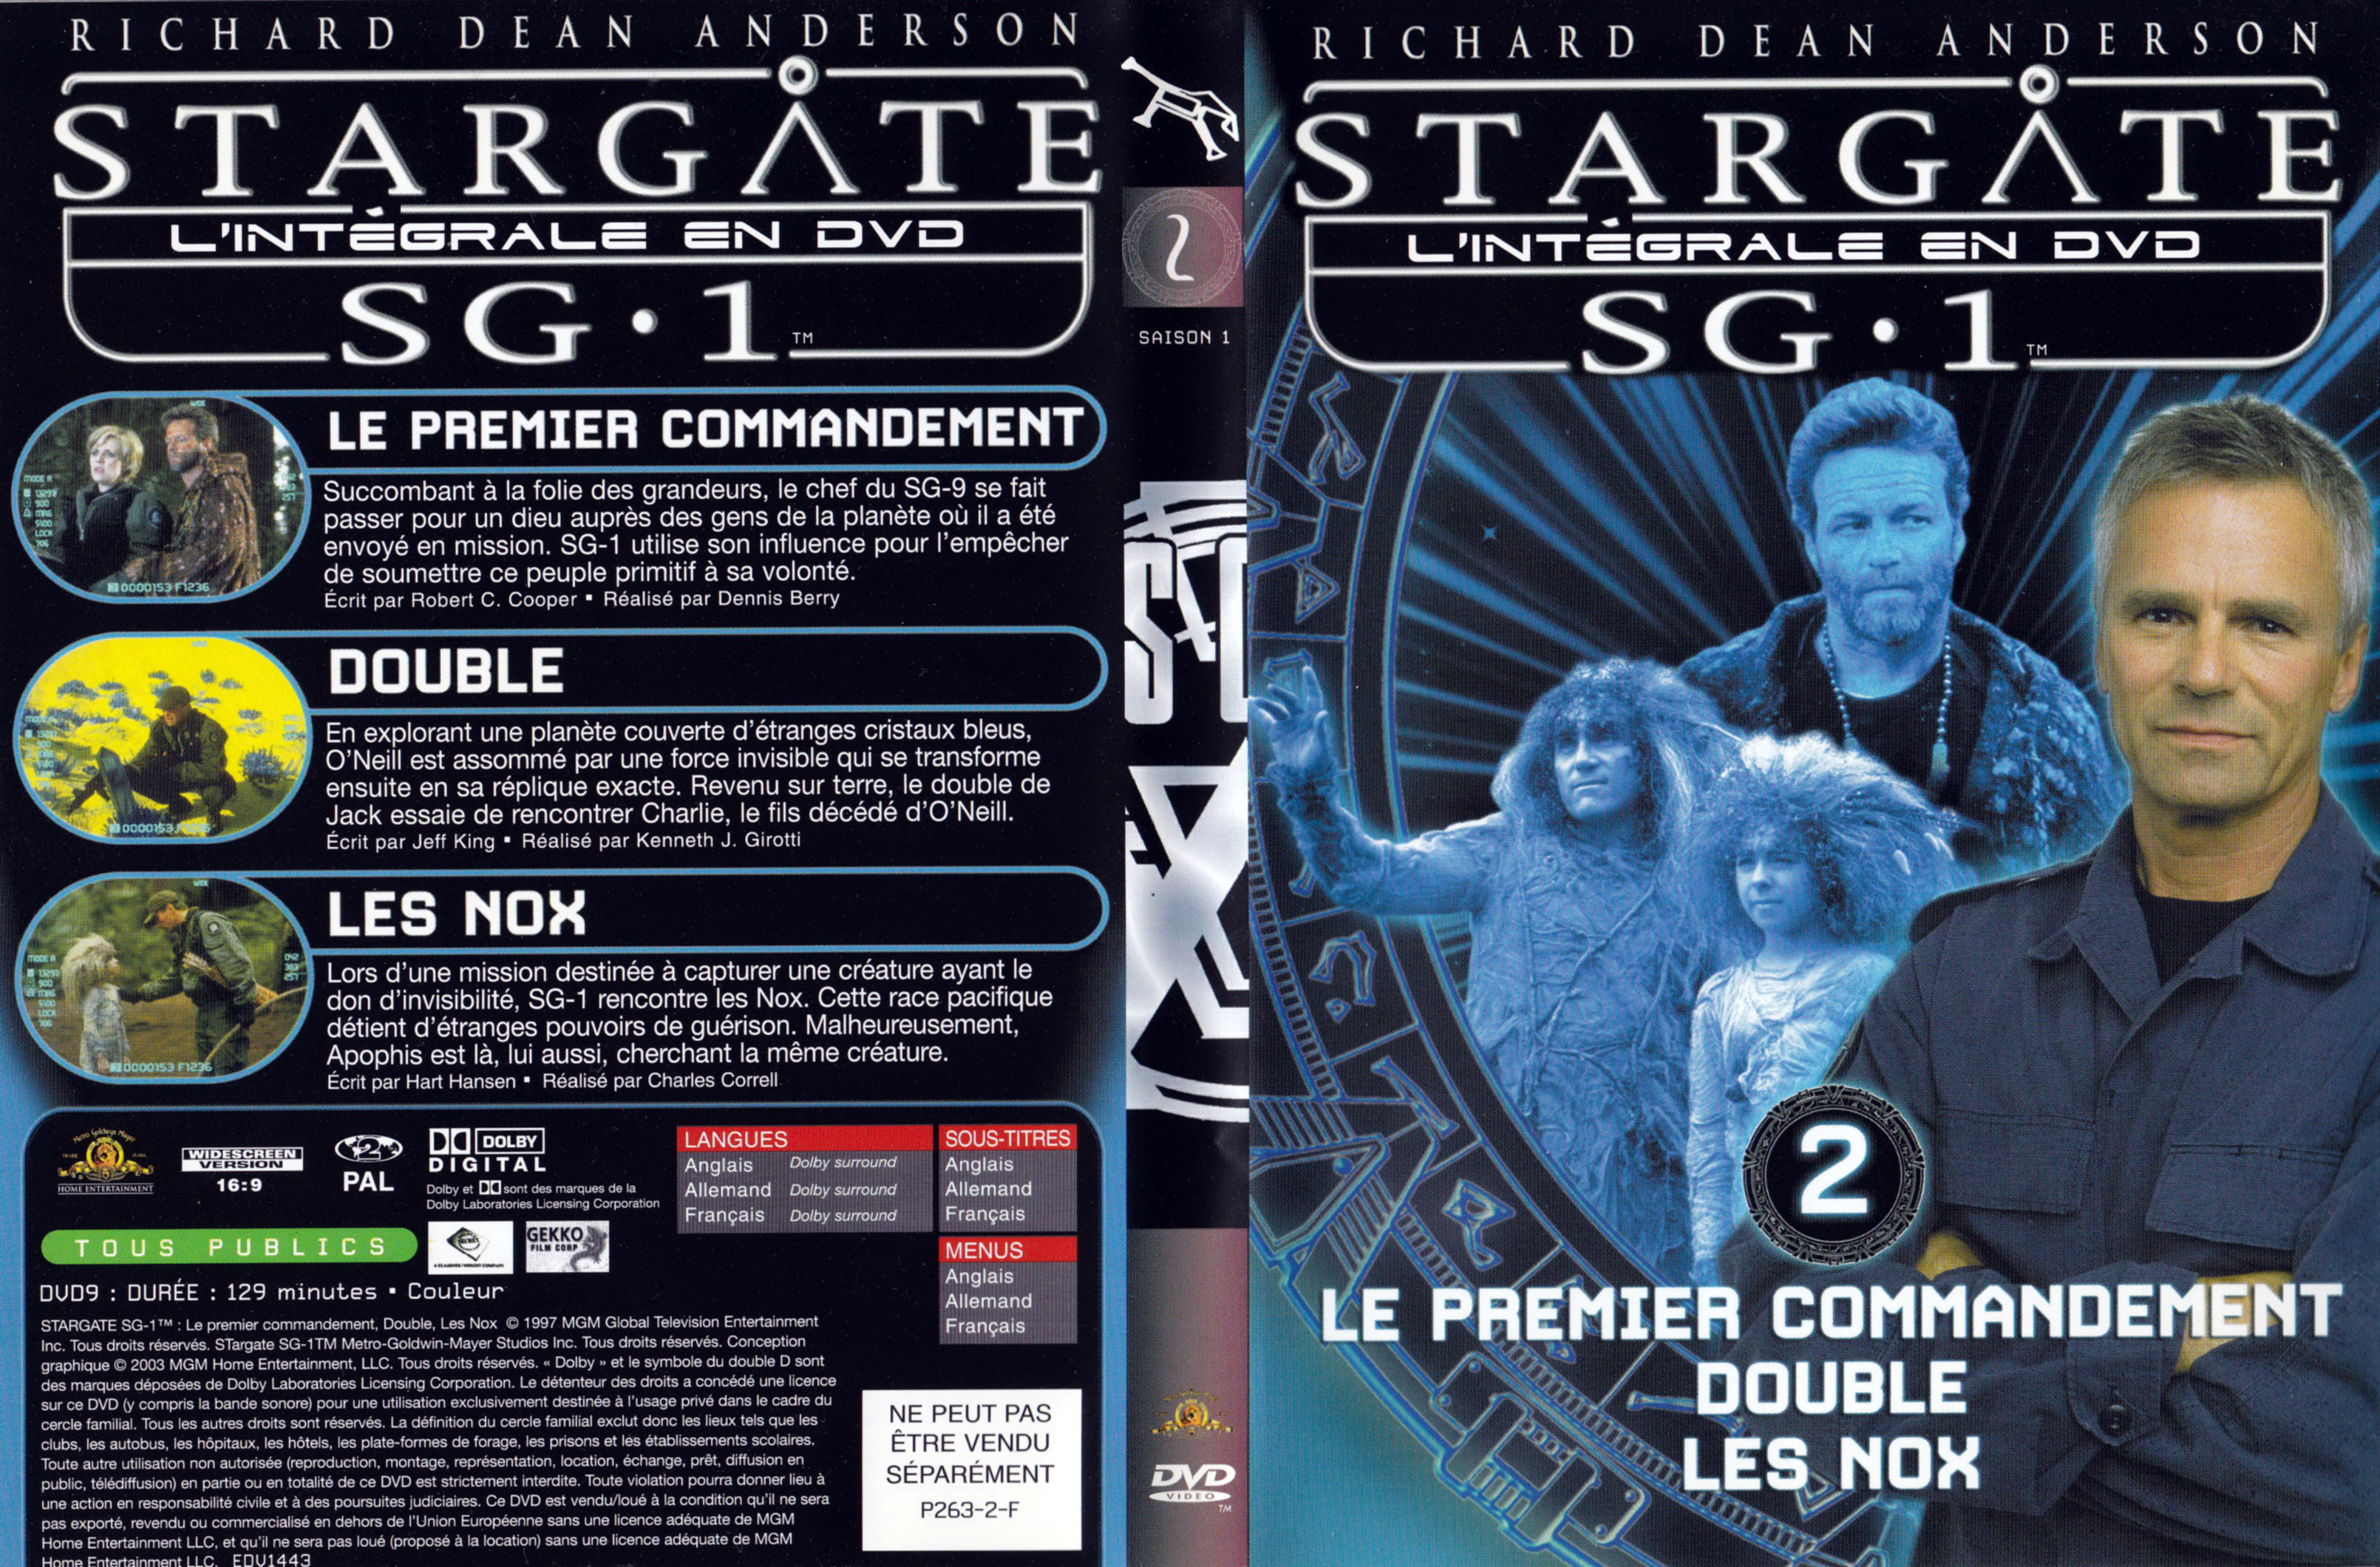 Jaquette DVD Stargate SG1 Intgrale Saison 1 vol 02